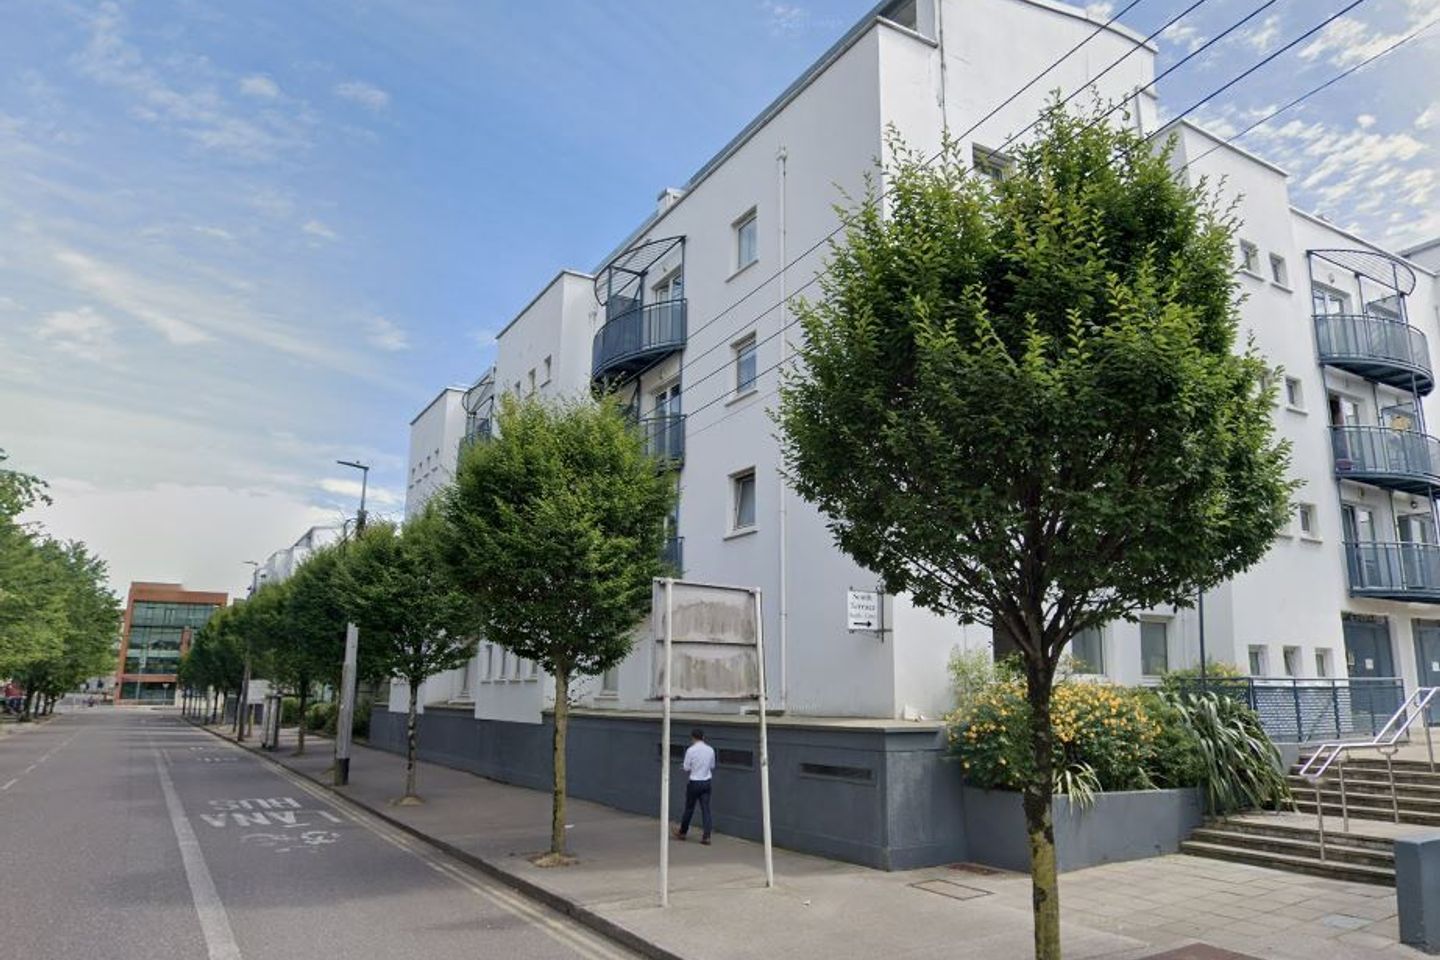 Apartment 45, Block B, South Terrace Court, Cork City, Co. Cork, T12R860